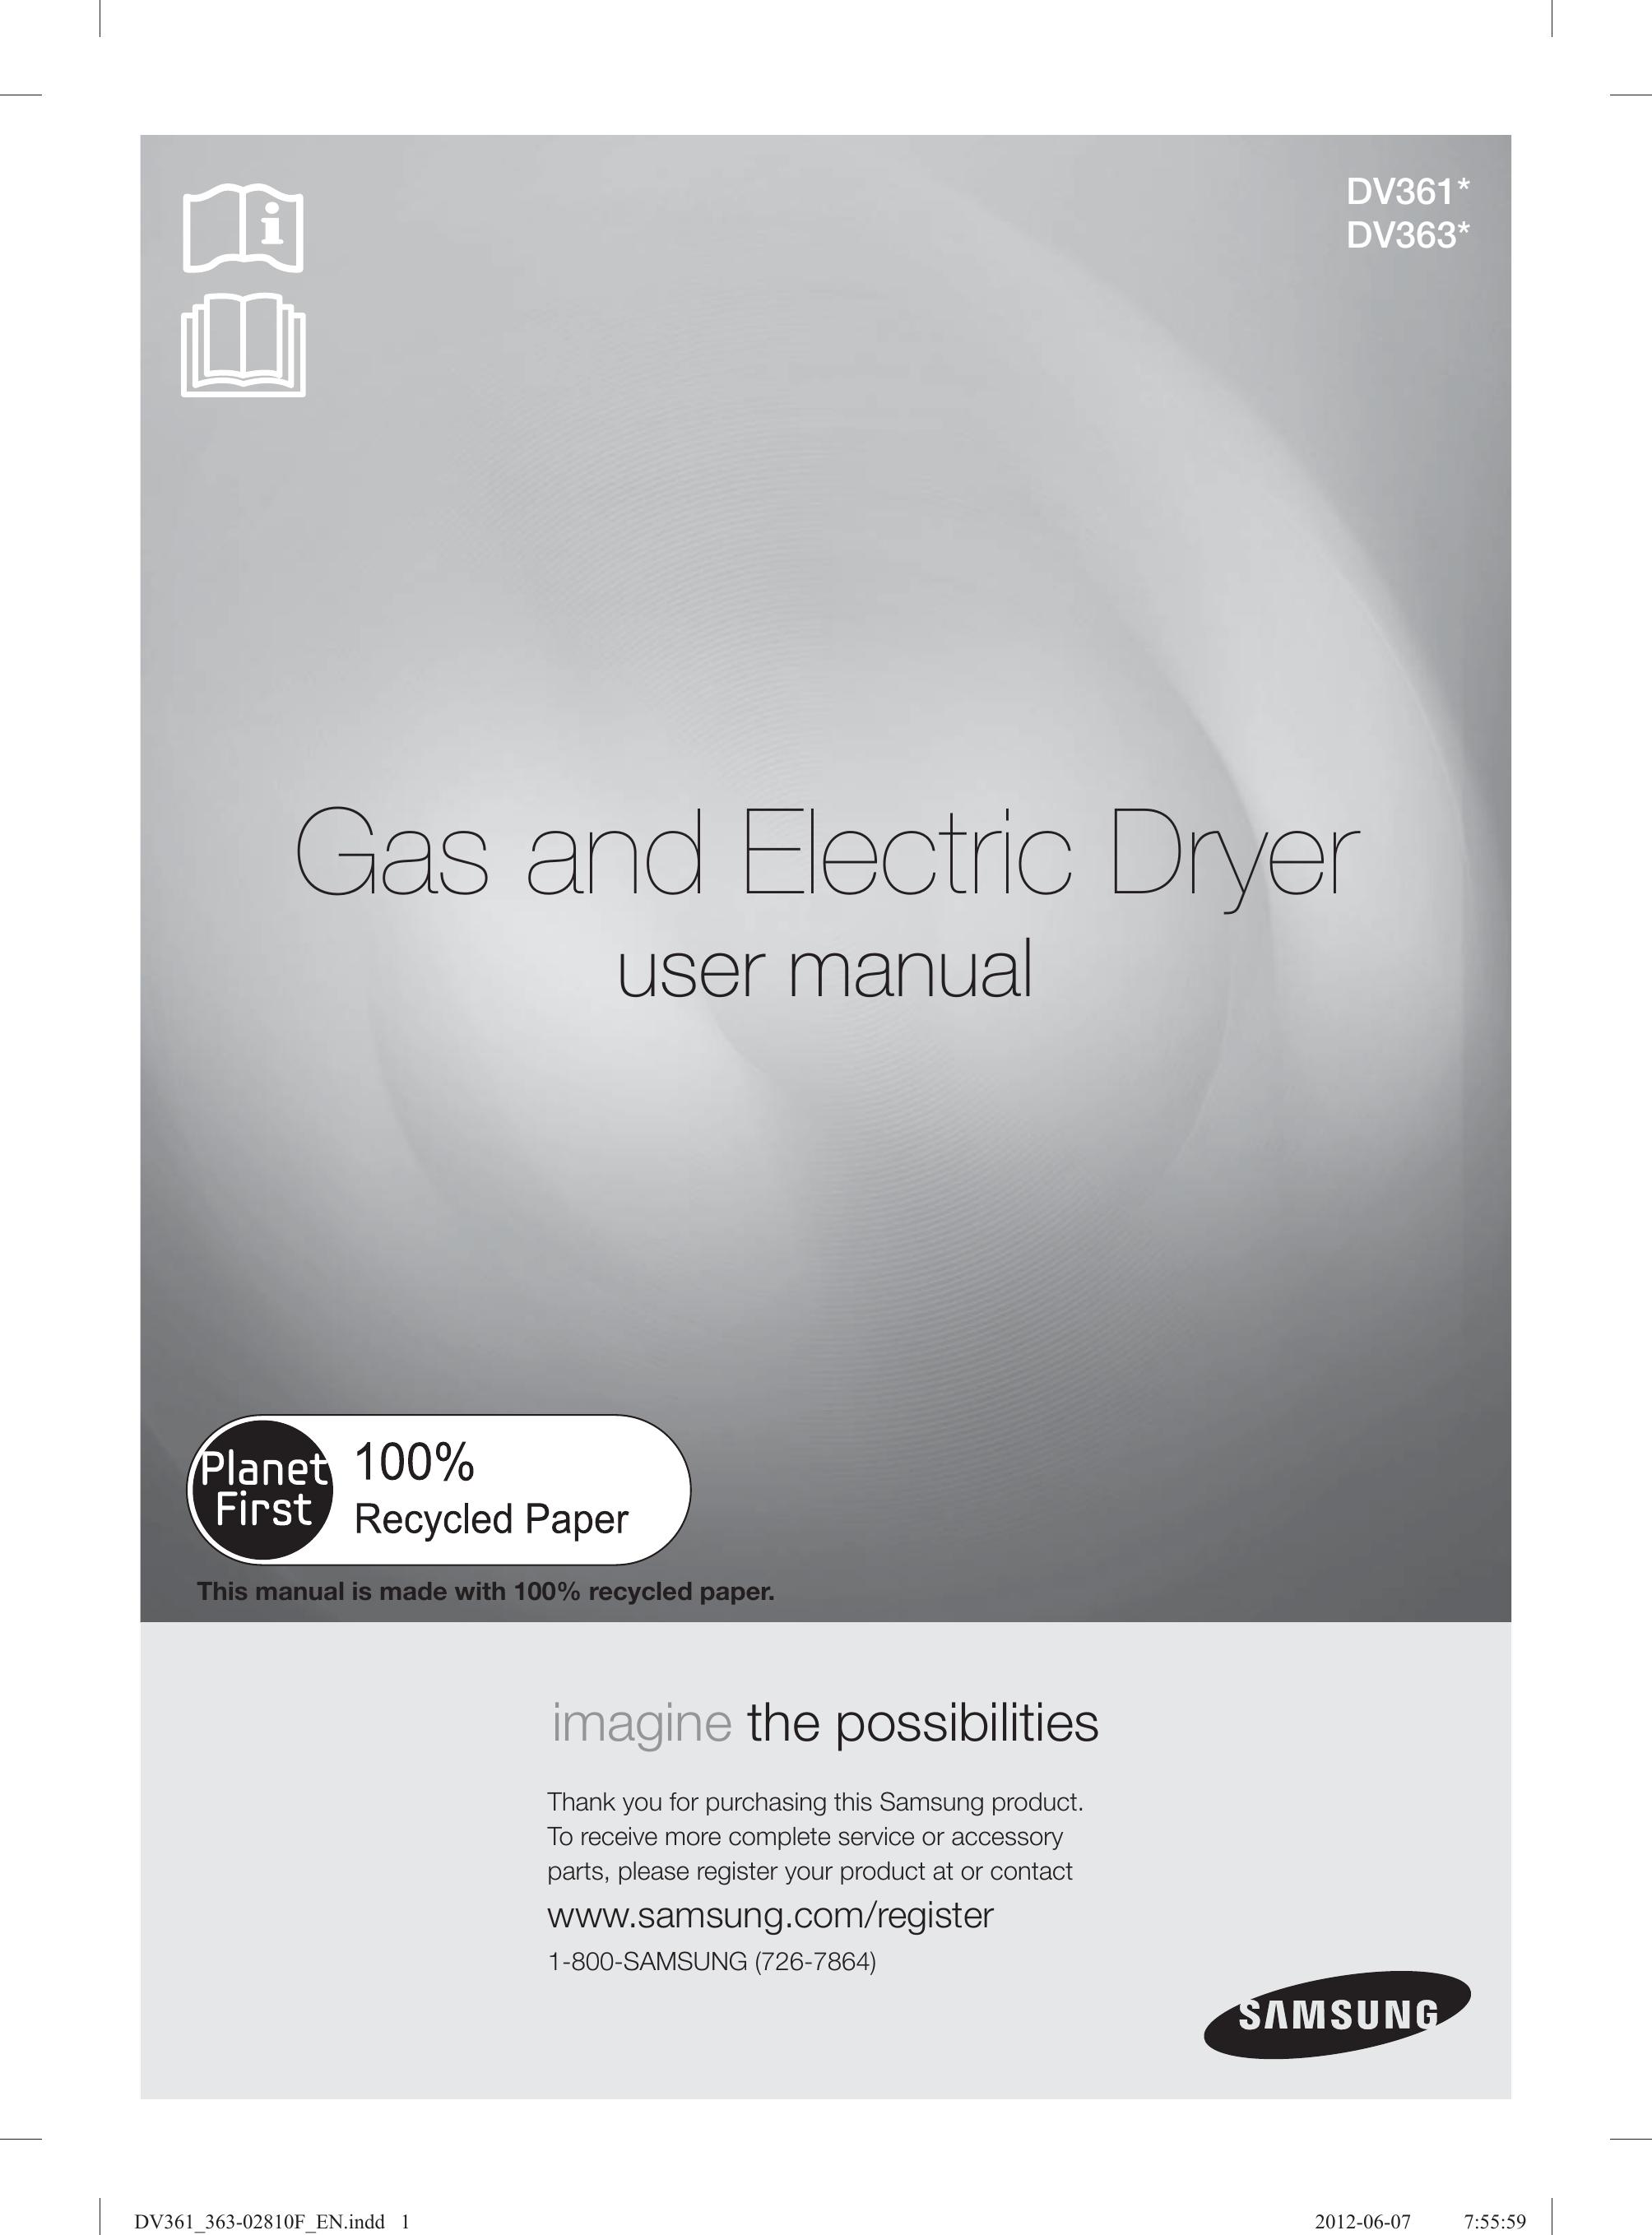 Samsung DV361EWBEWR Clothes Dryer User Manual